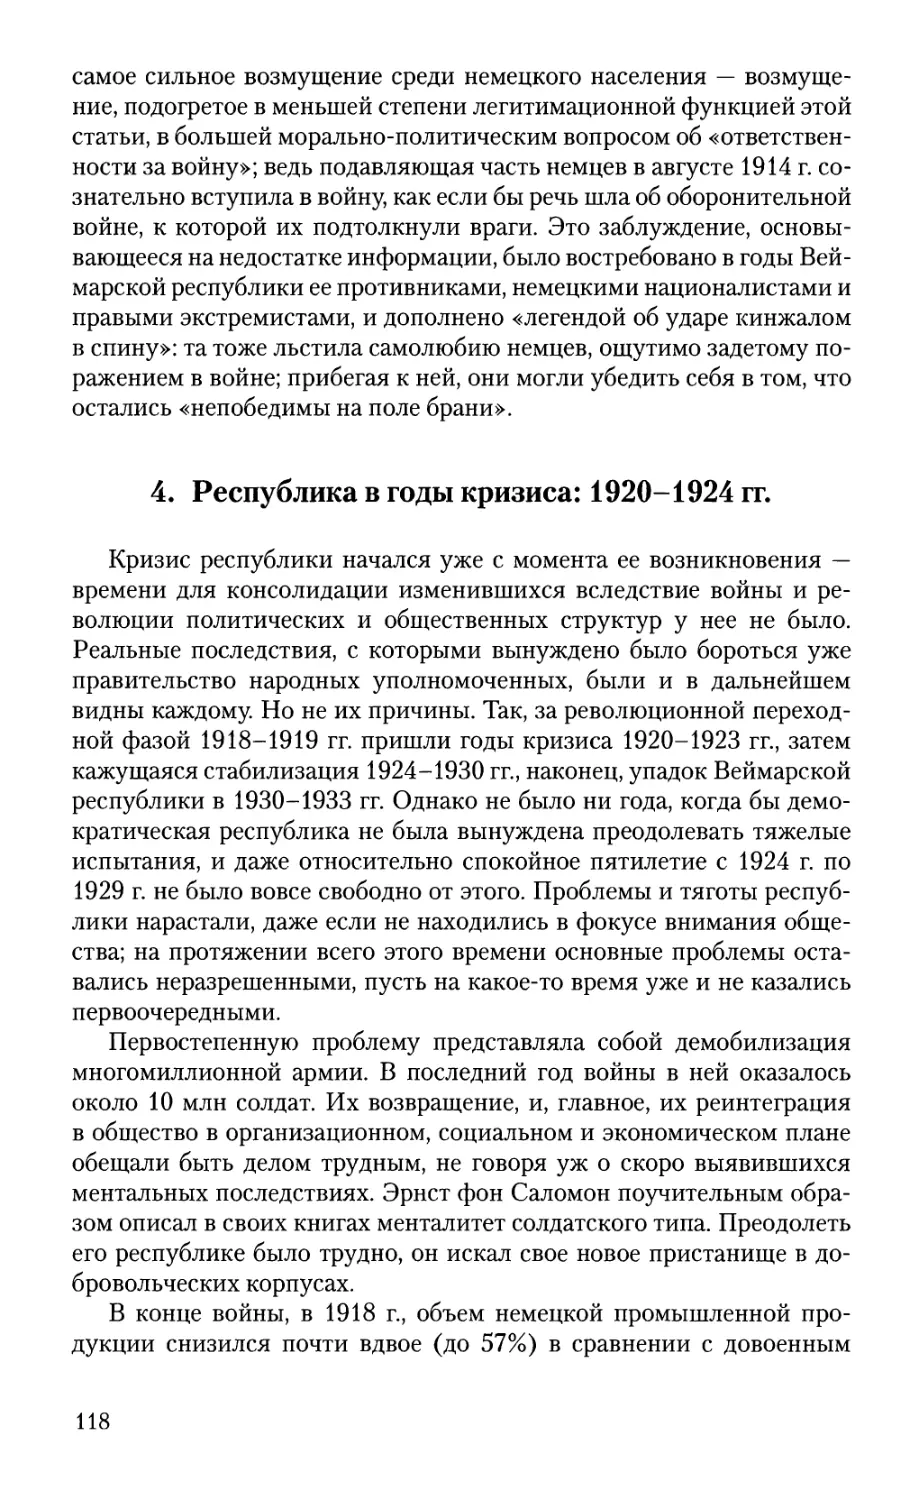 4. Республика в годы кризиса: 1920-1924 гг